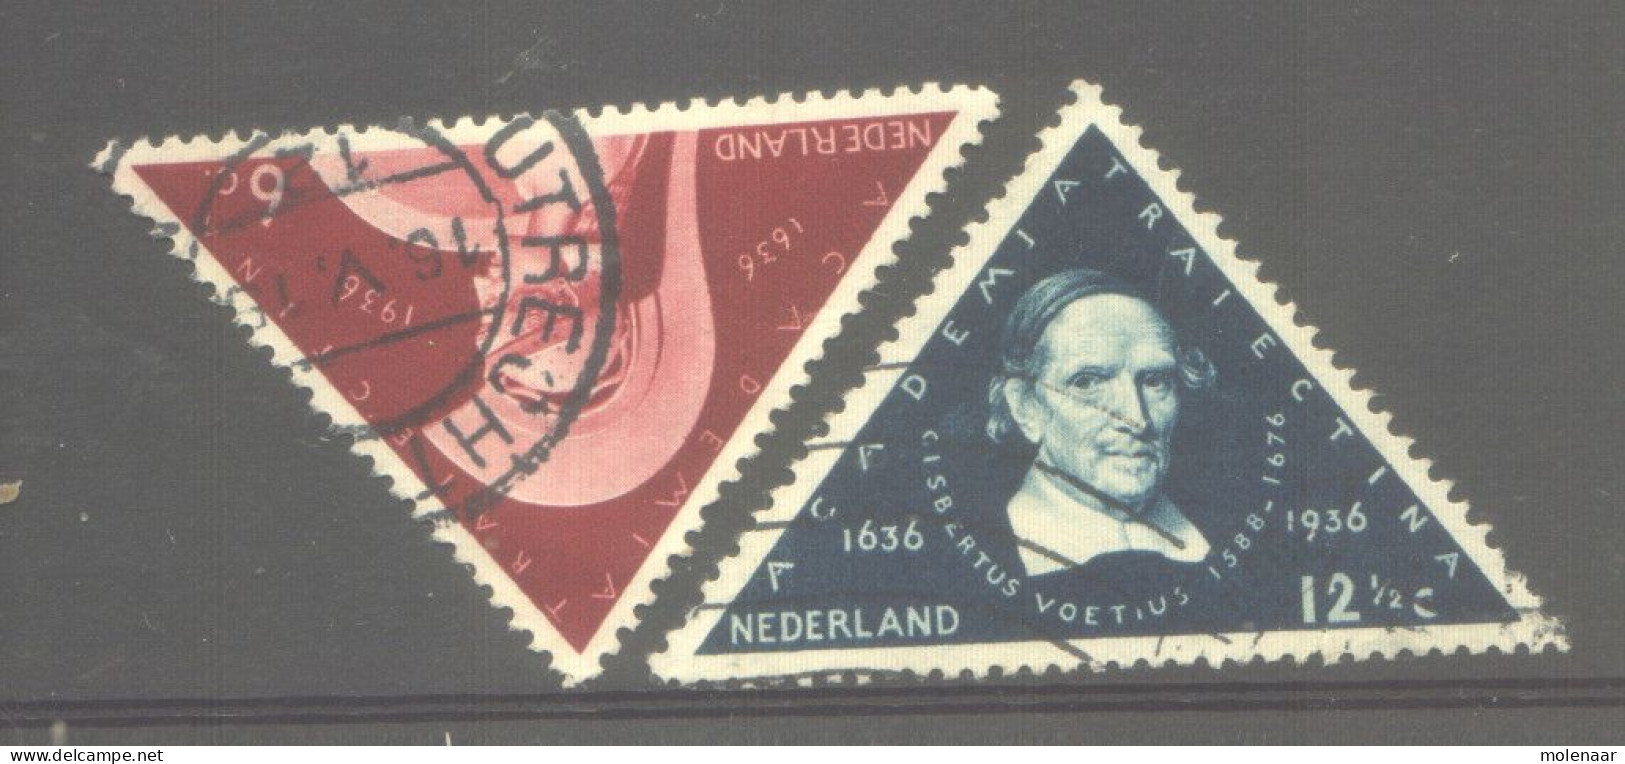 Postzegels > Europa > Nederland > Periode 1891-1948 (Wilhelmina) > 1891-1909 > 287-288 Gebruikt (11767) - Gebruikt